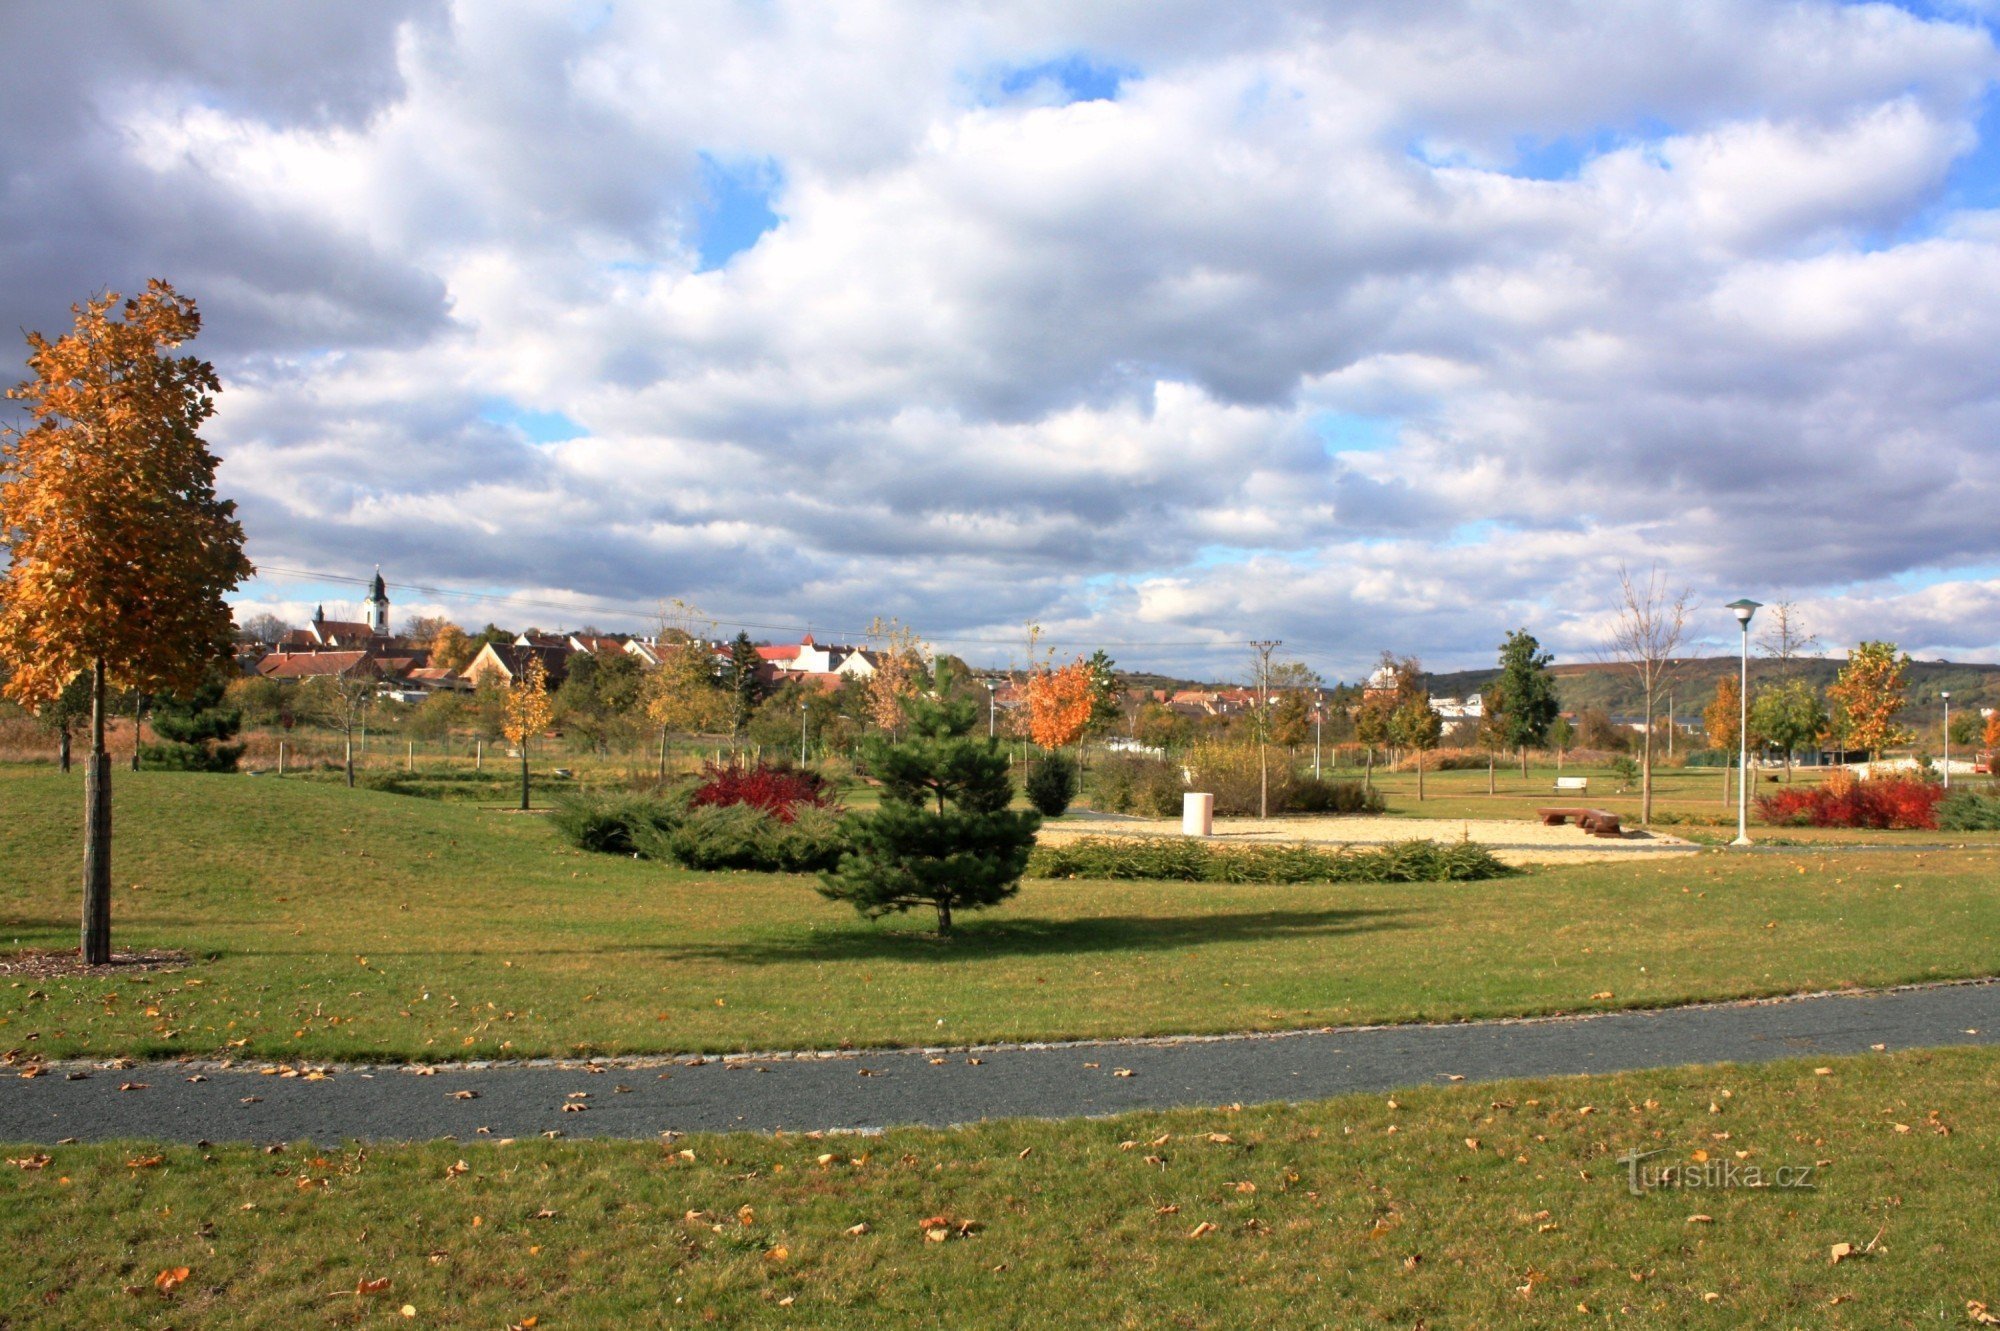 Velké Pavlovice - park in de buurt van het treinstation